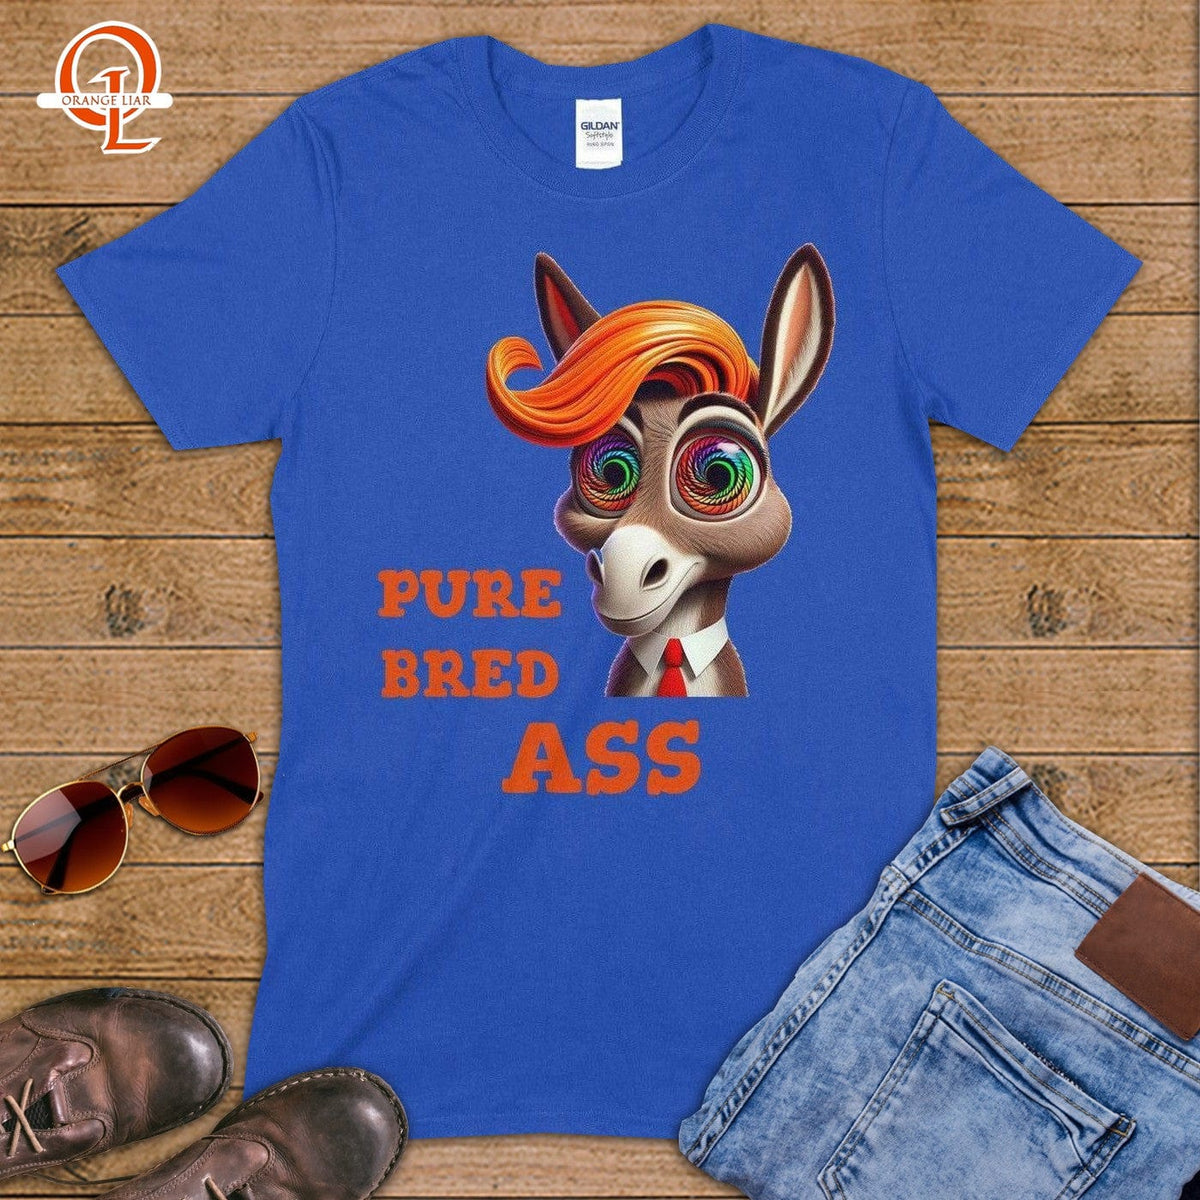 Pure Bred Ass ~ T-Shirt-Orange Liar